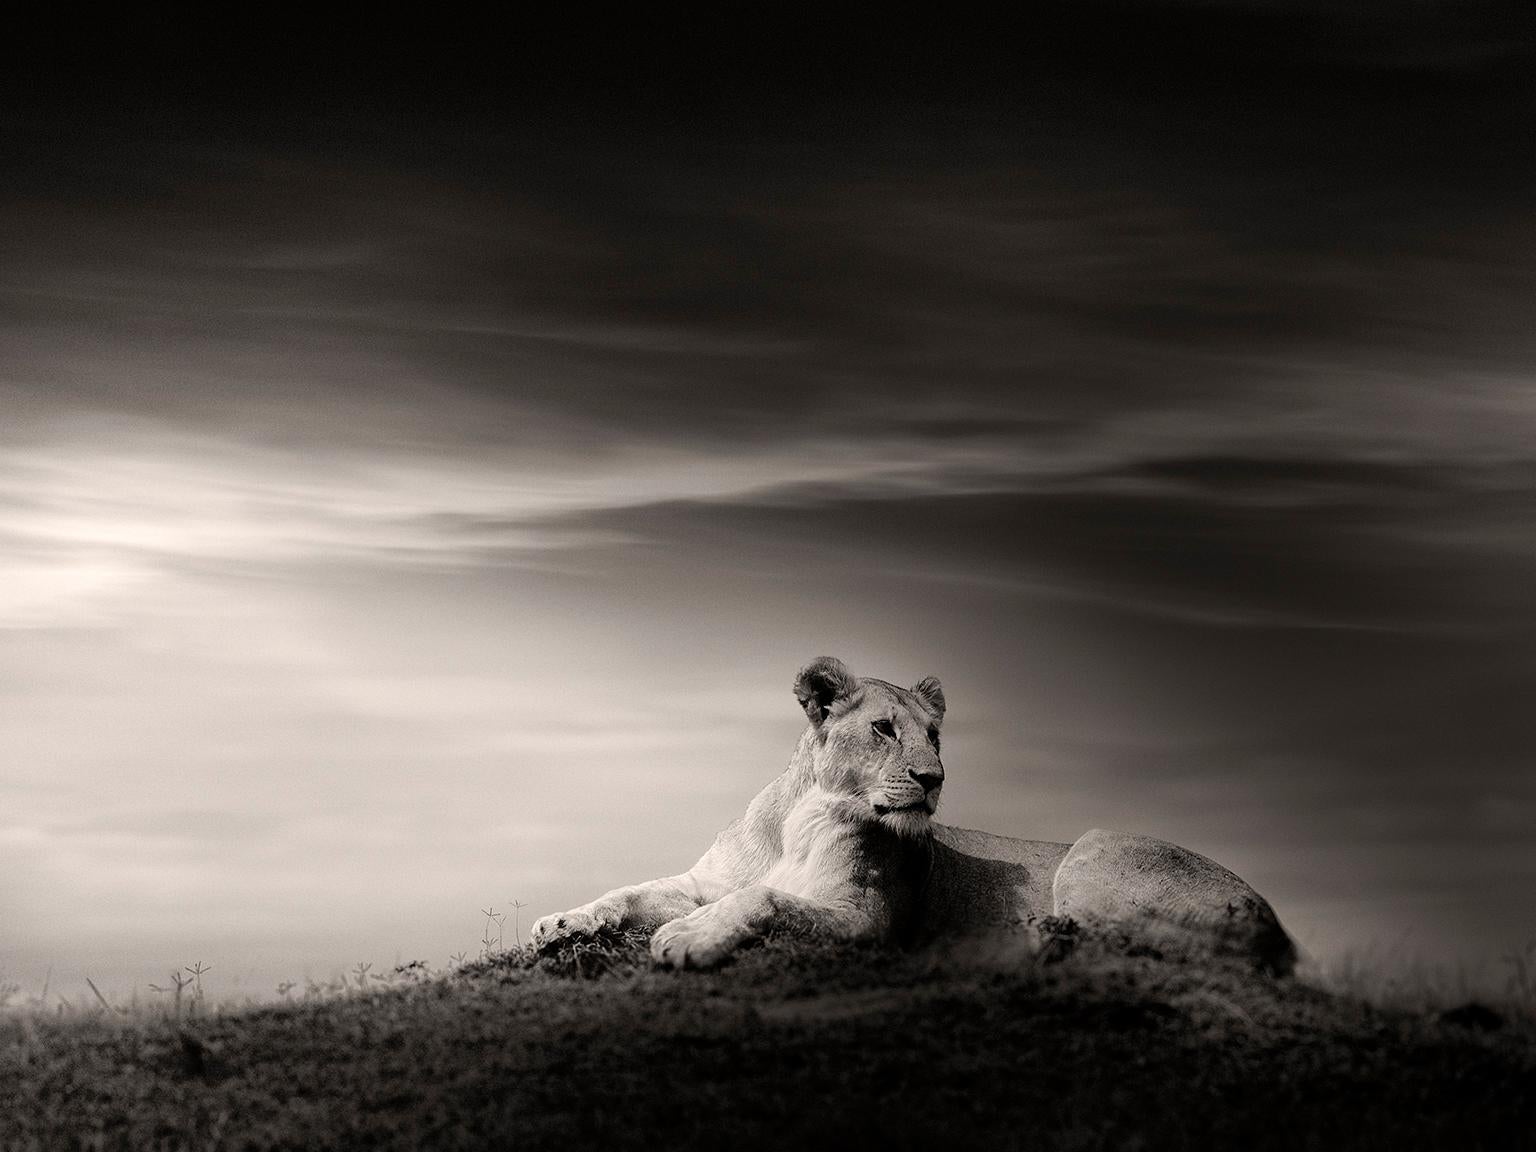 Joachim Schmeisser Black and White Photograph – Die Löwe, Schwarz-Weiß-Fotografie, Afrika, Porträt, Tierwelt